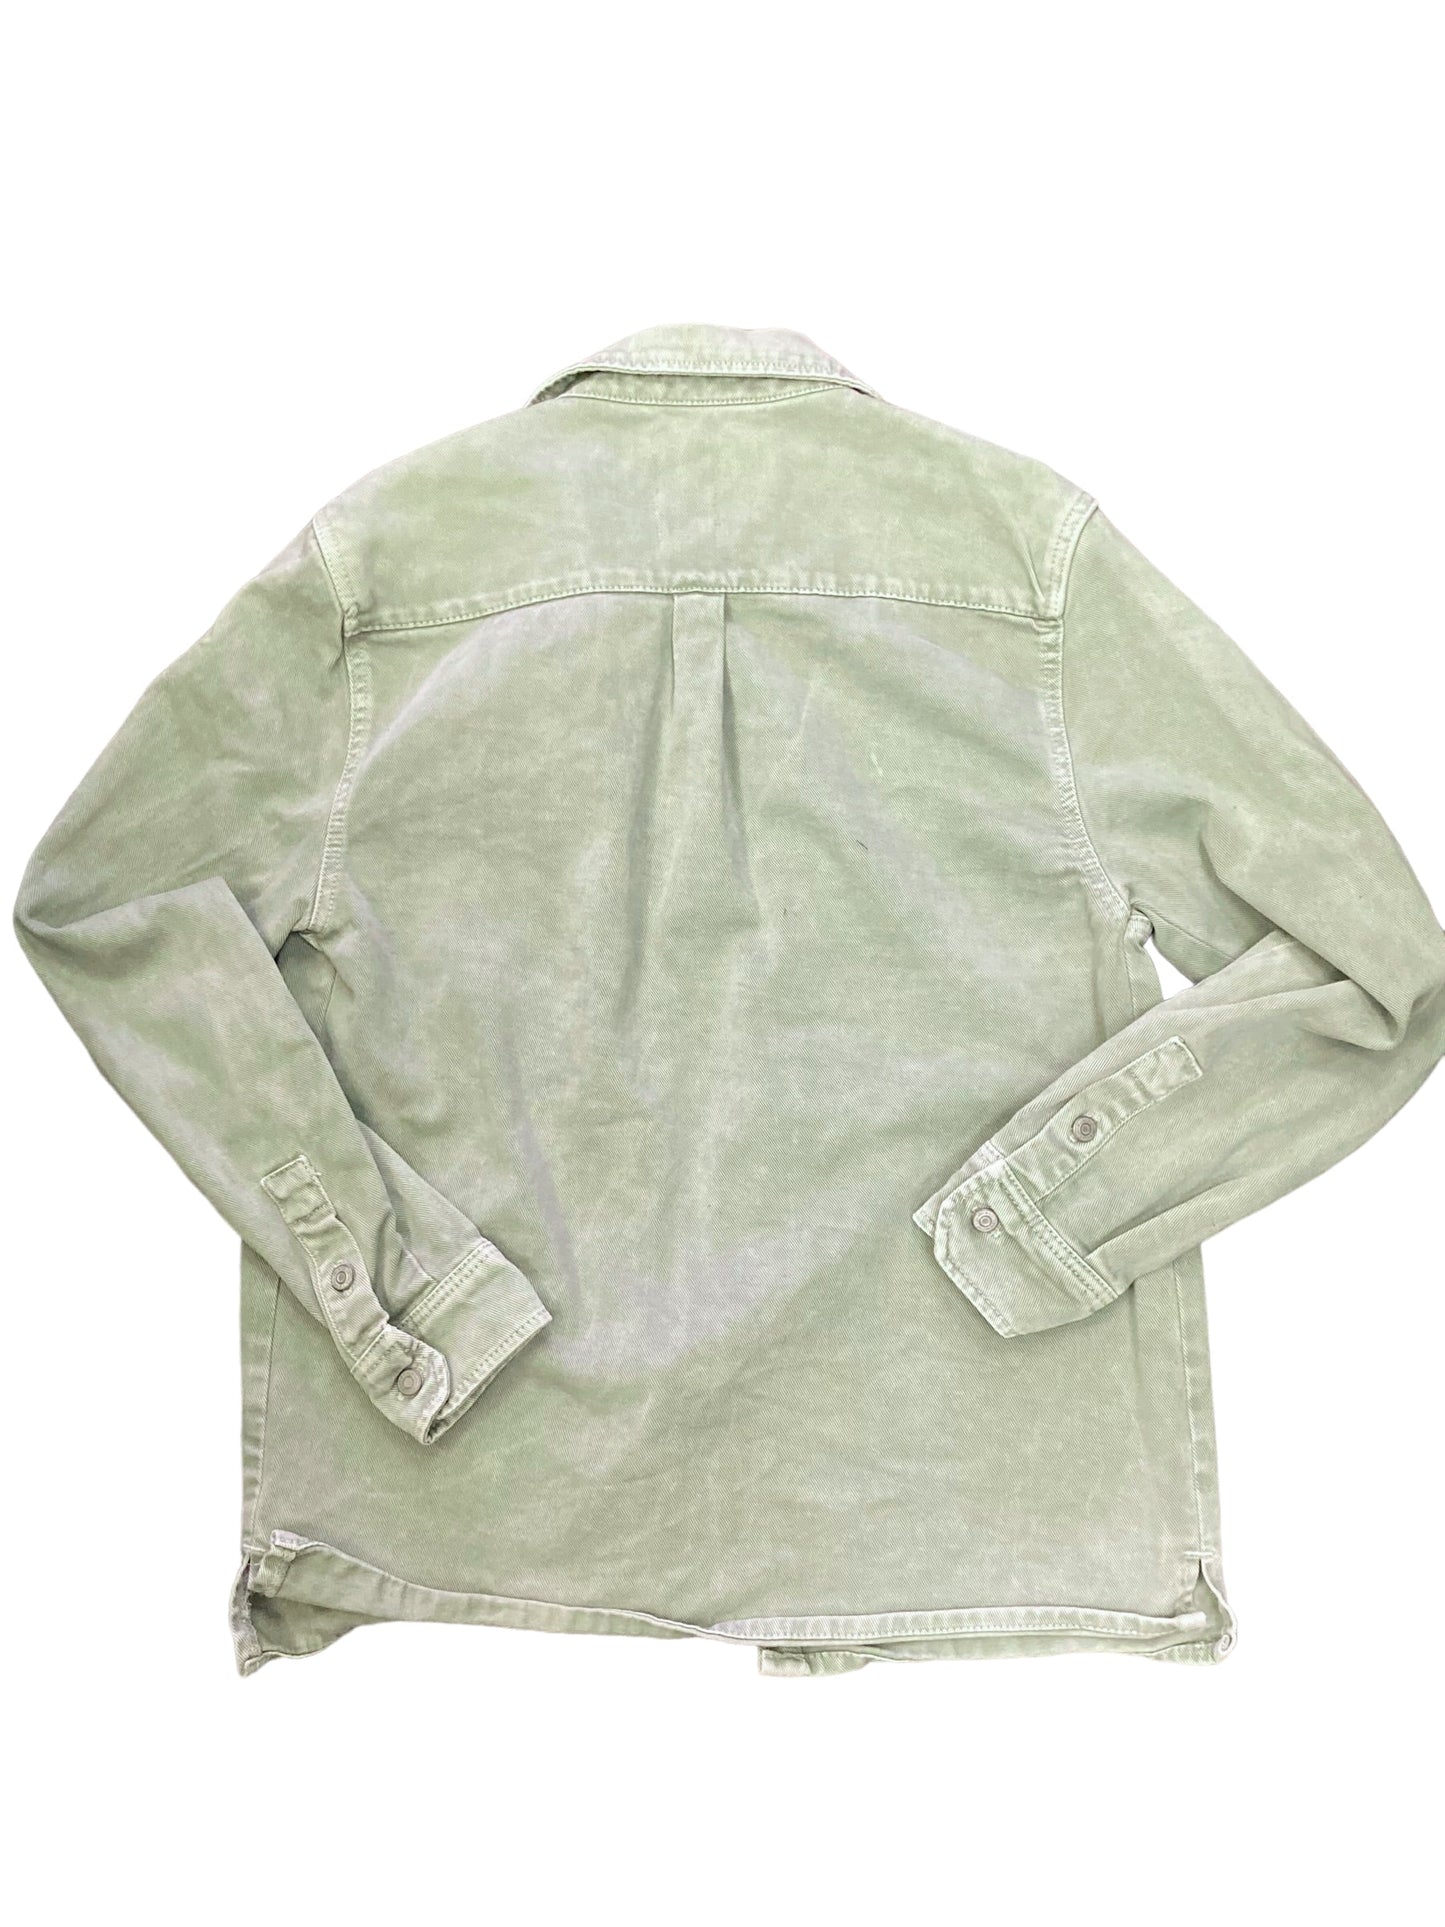 Jacket Denim By Zara  Size: M